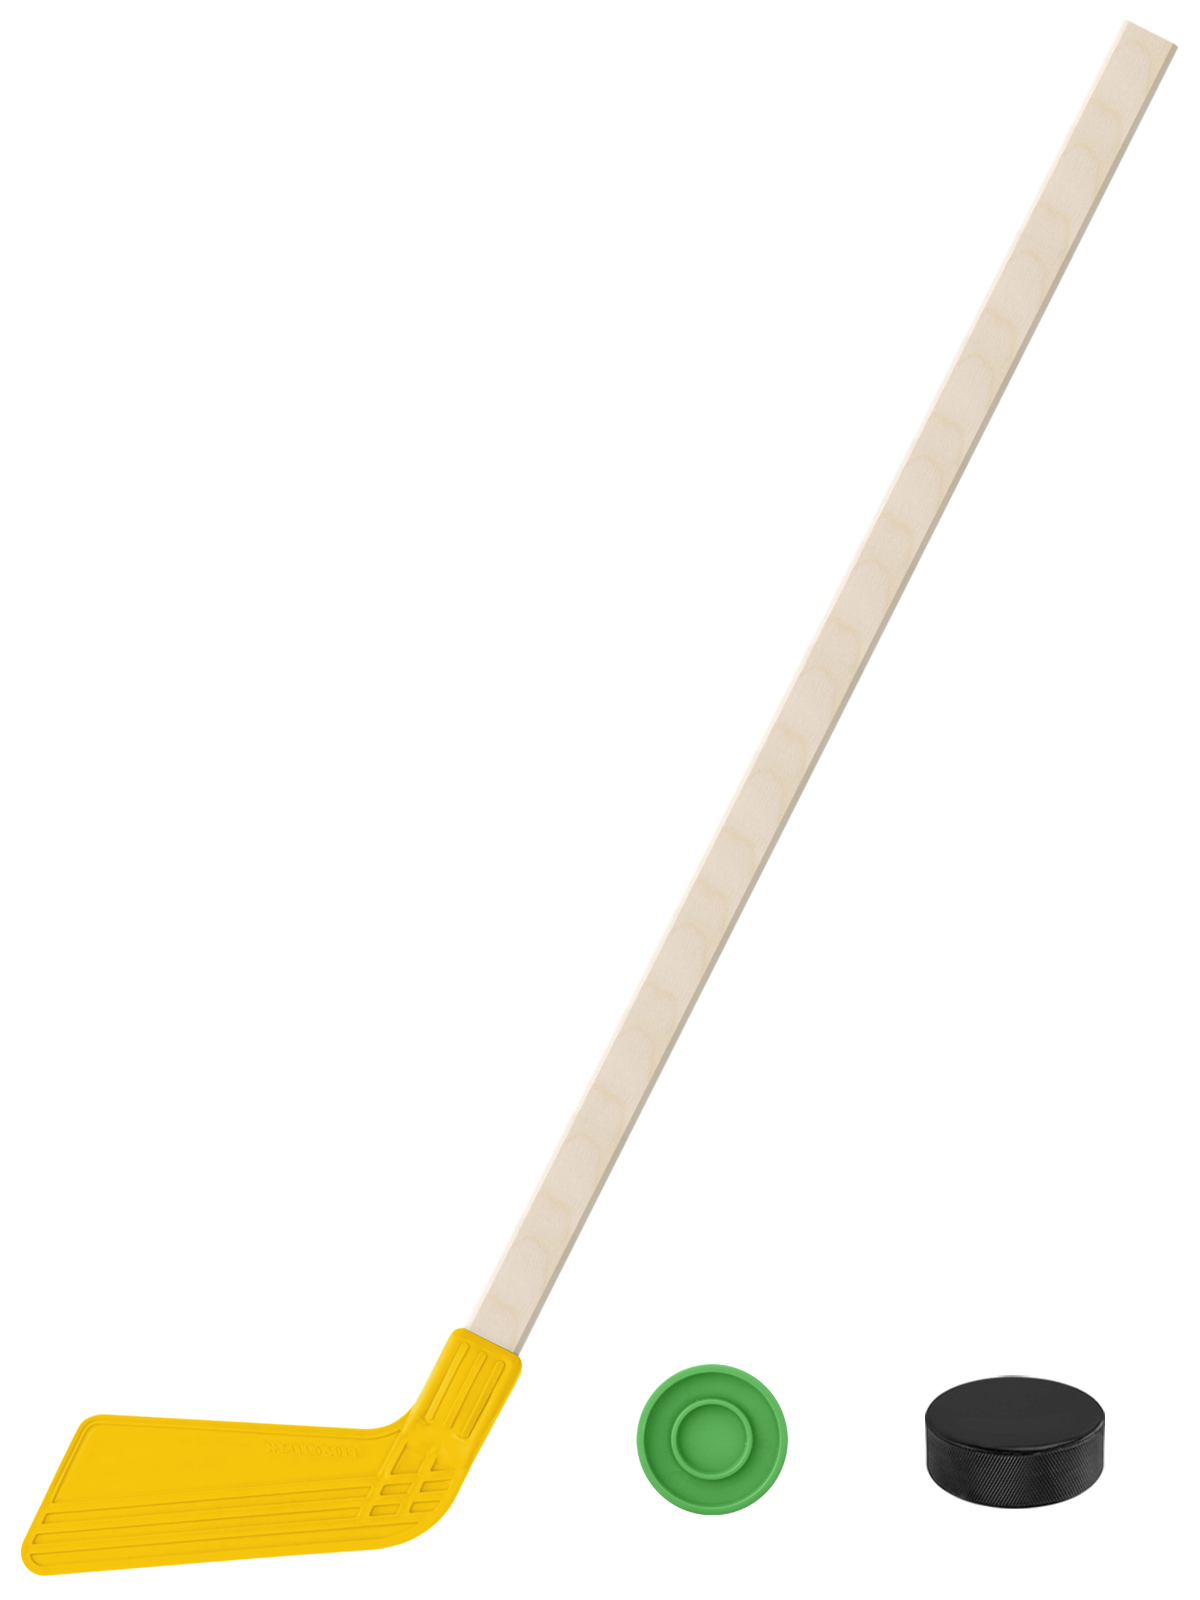 фото Набор задира-плюс клюшка хоккейная желтая 80 см. +шайба+шайба детская 60 мм кл+шж+шд